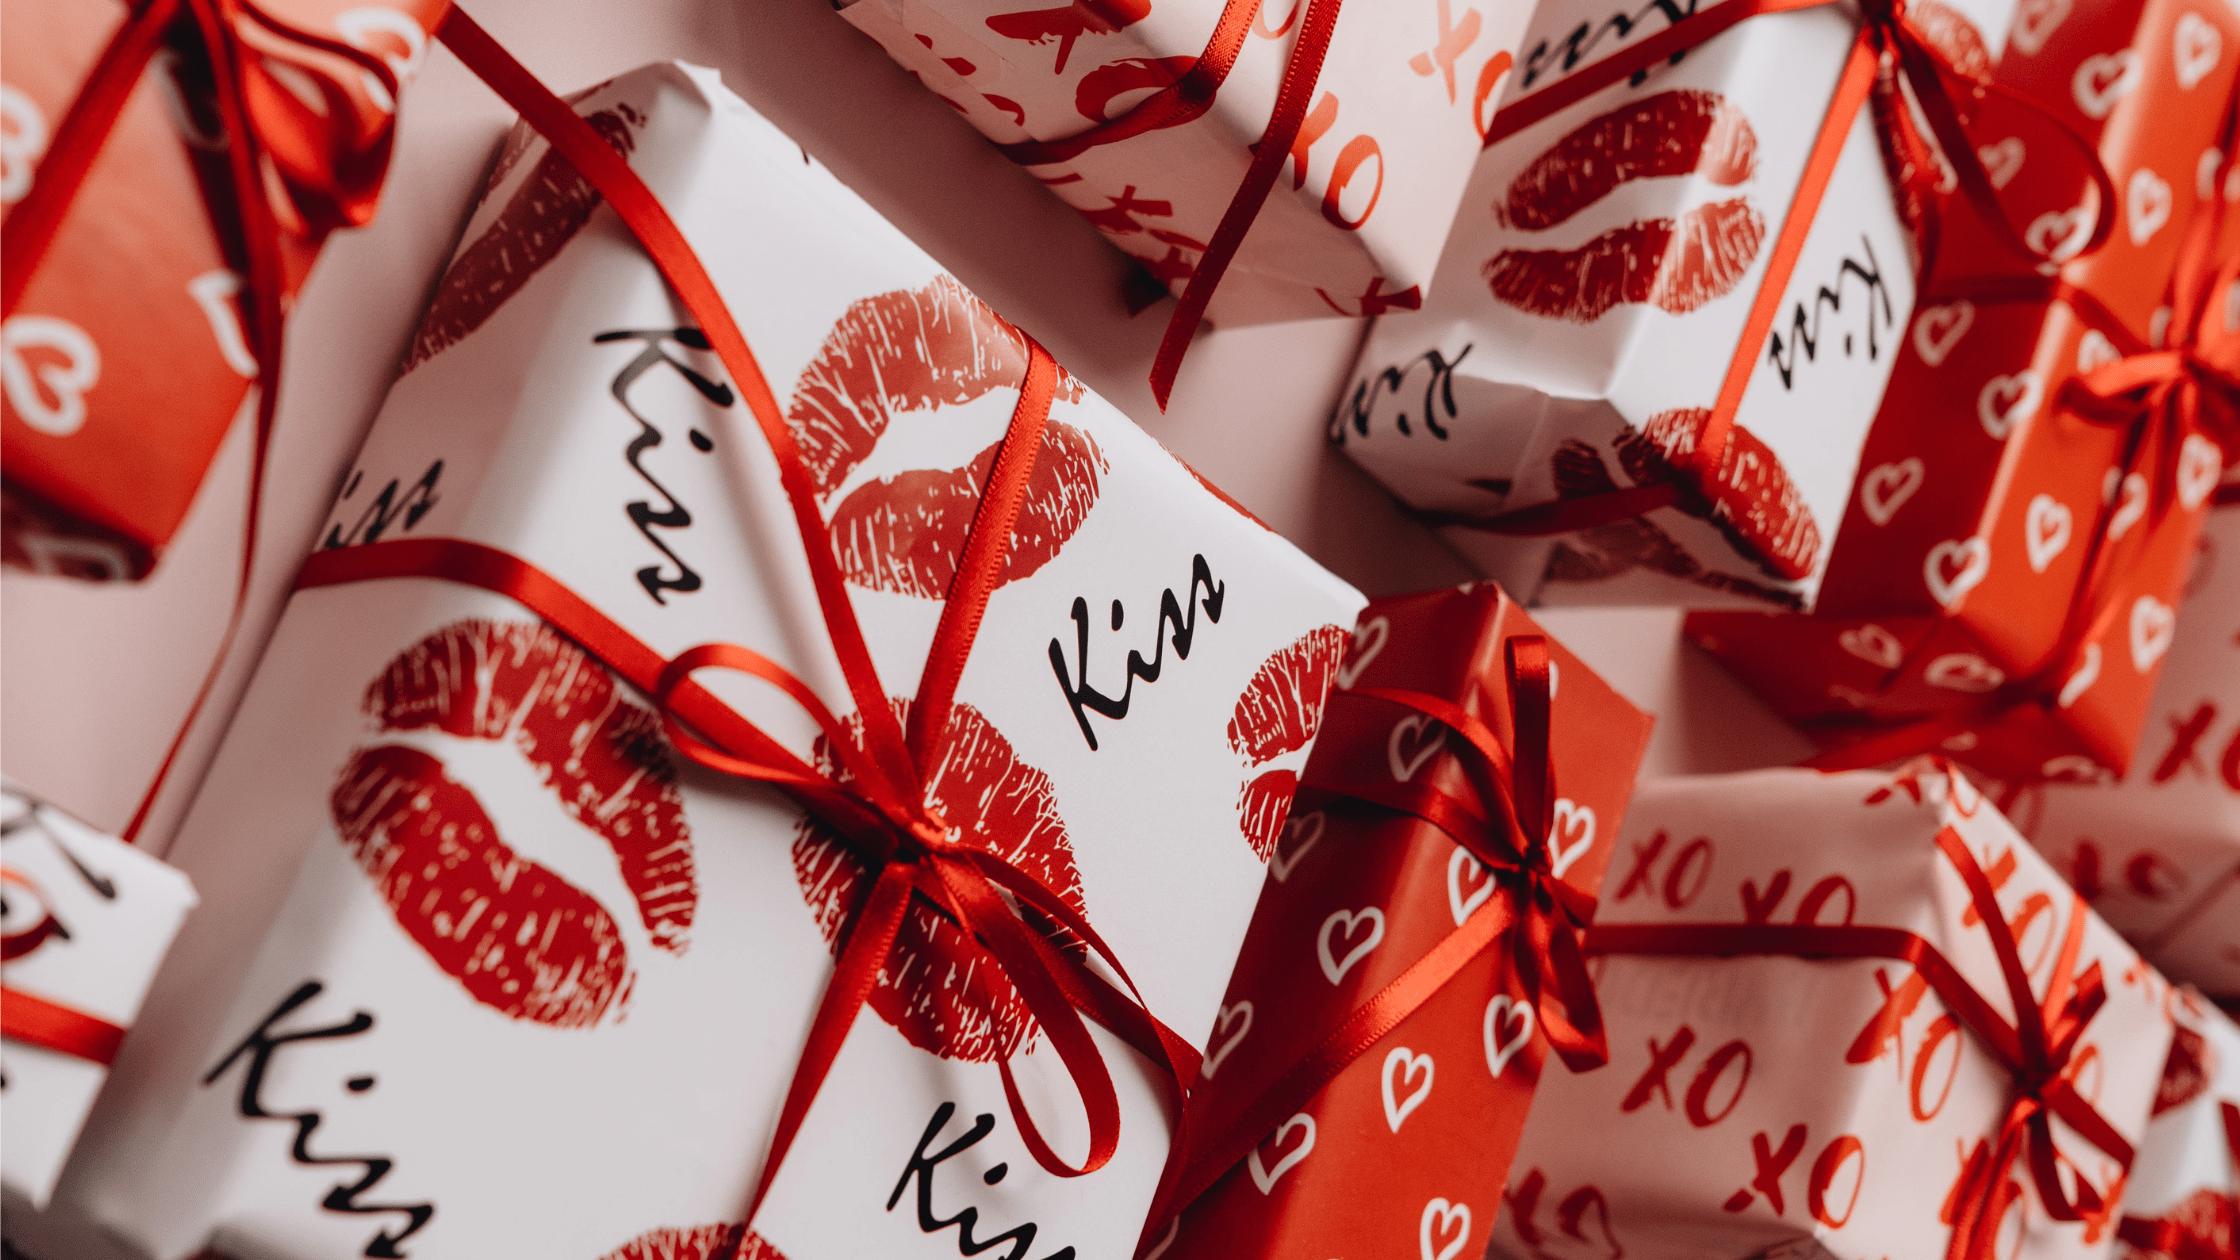 Valentine’s Day gift – PUMP IT UP MAGAZINE